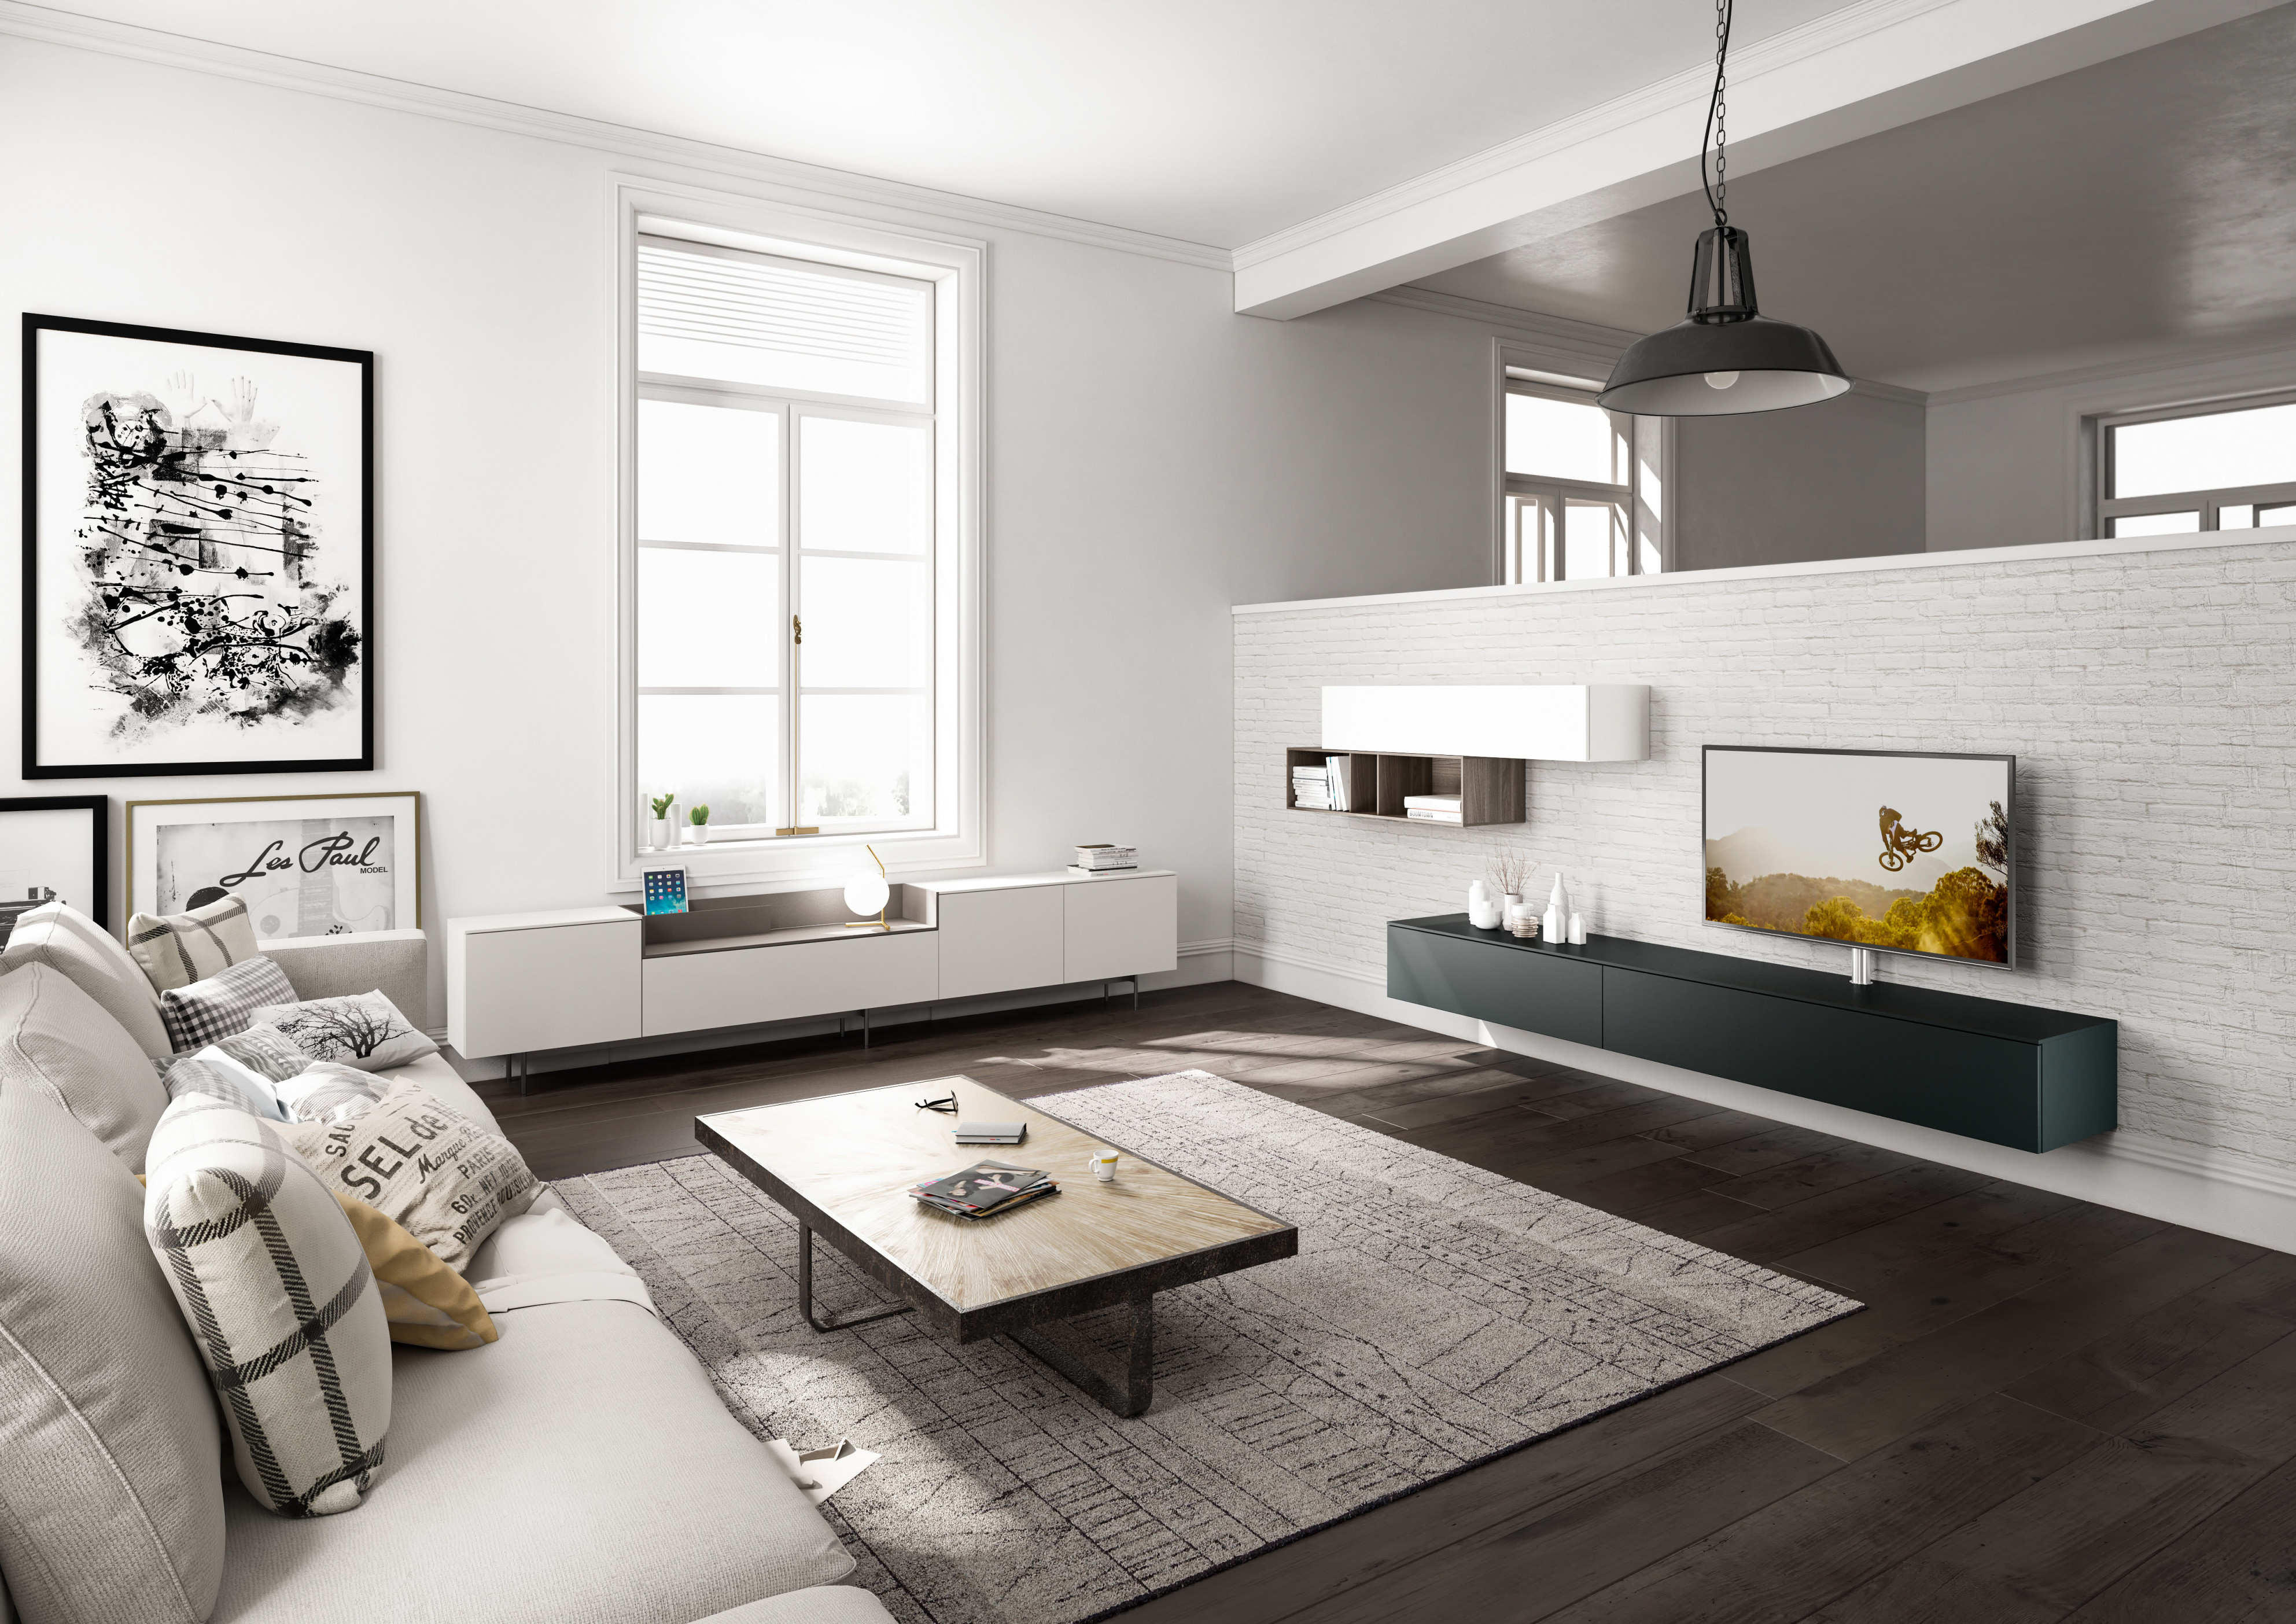 Wohnzimmergestaltung – Die Besten Ideen Tipps Wohnbeispiele von Ideen